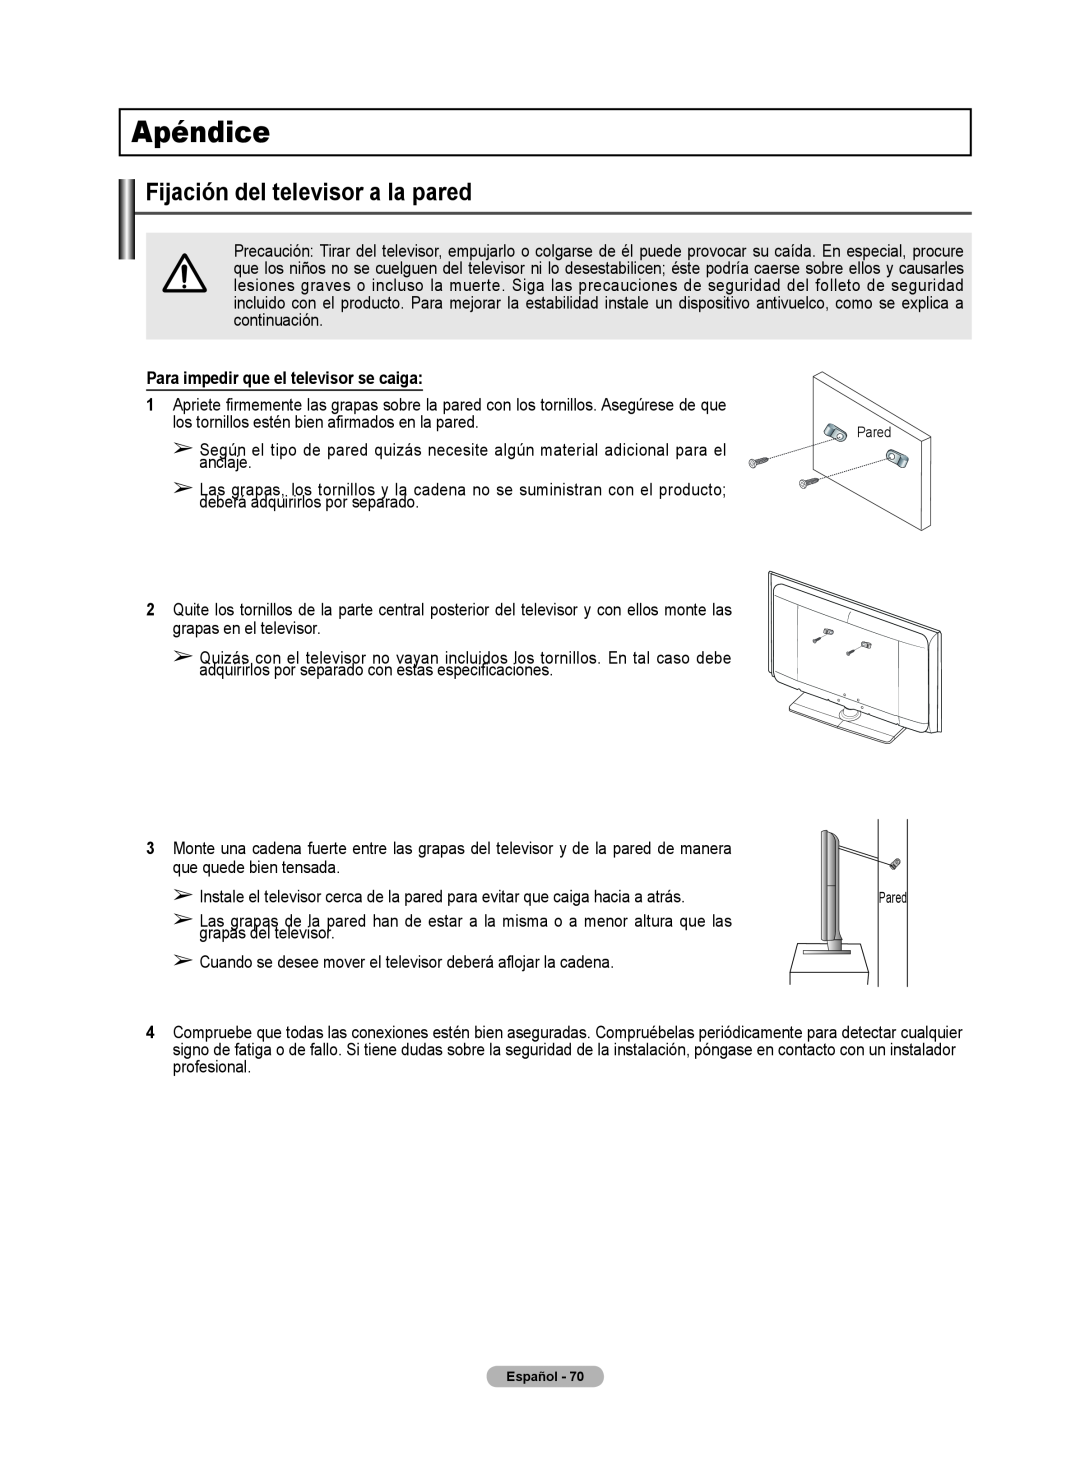 Samsung 510 user manual Apéndice, Fijación del televisor a la pared, Para impedir que el televisor se caiga 